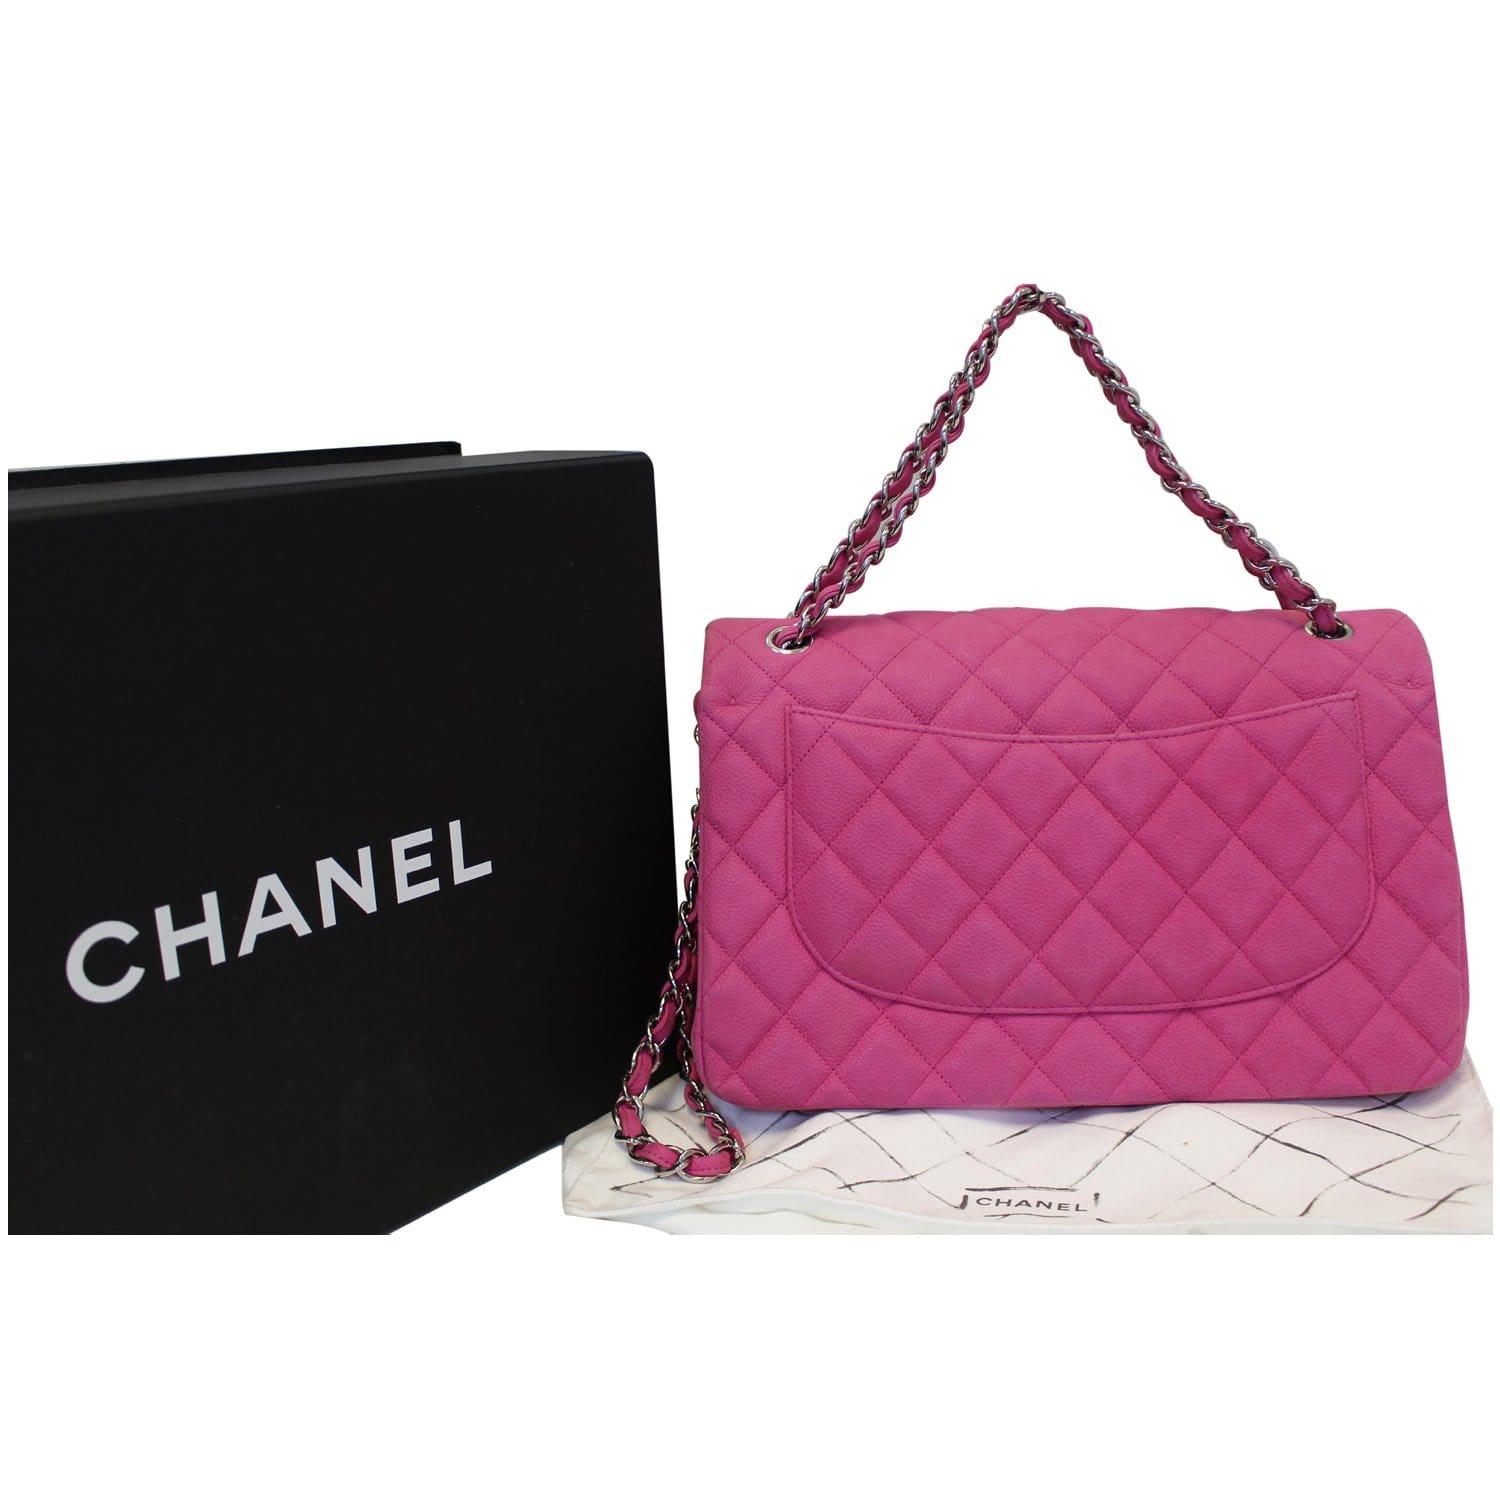 Chanel Classic Double Flap Bag Quilted Caviar Jumbo by Rebag x FabFitFun -  FabFitFun